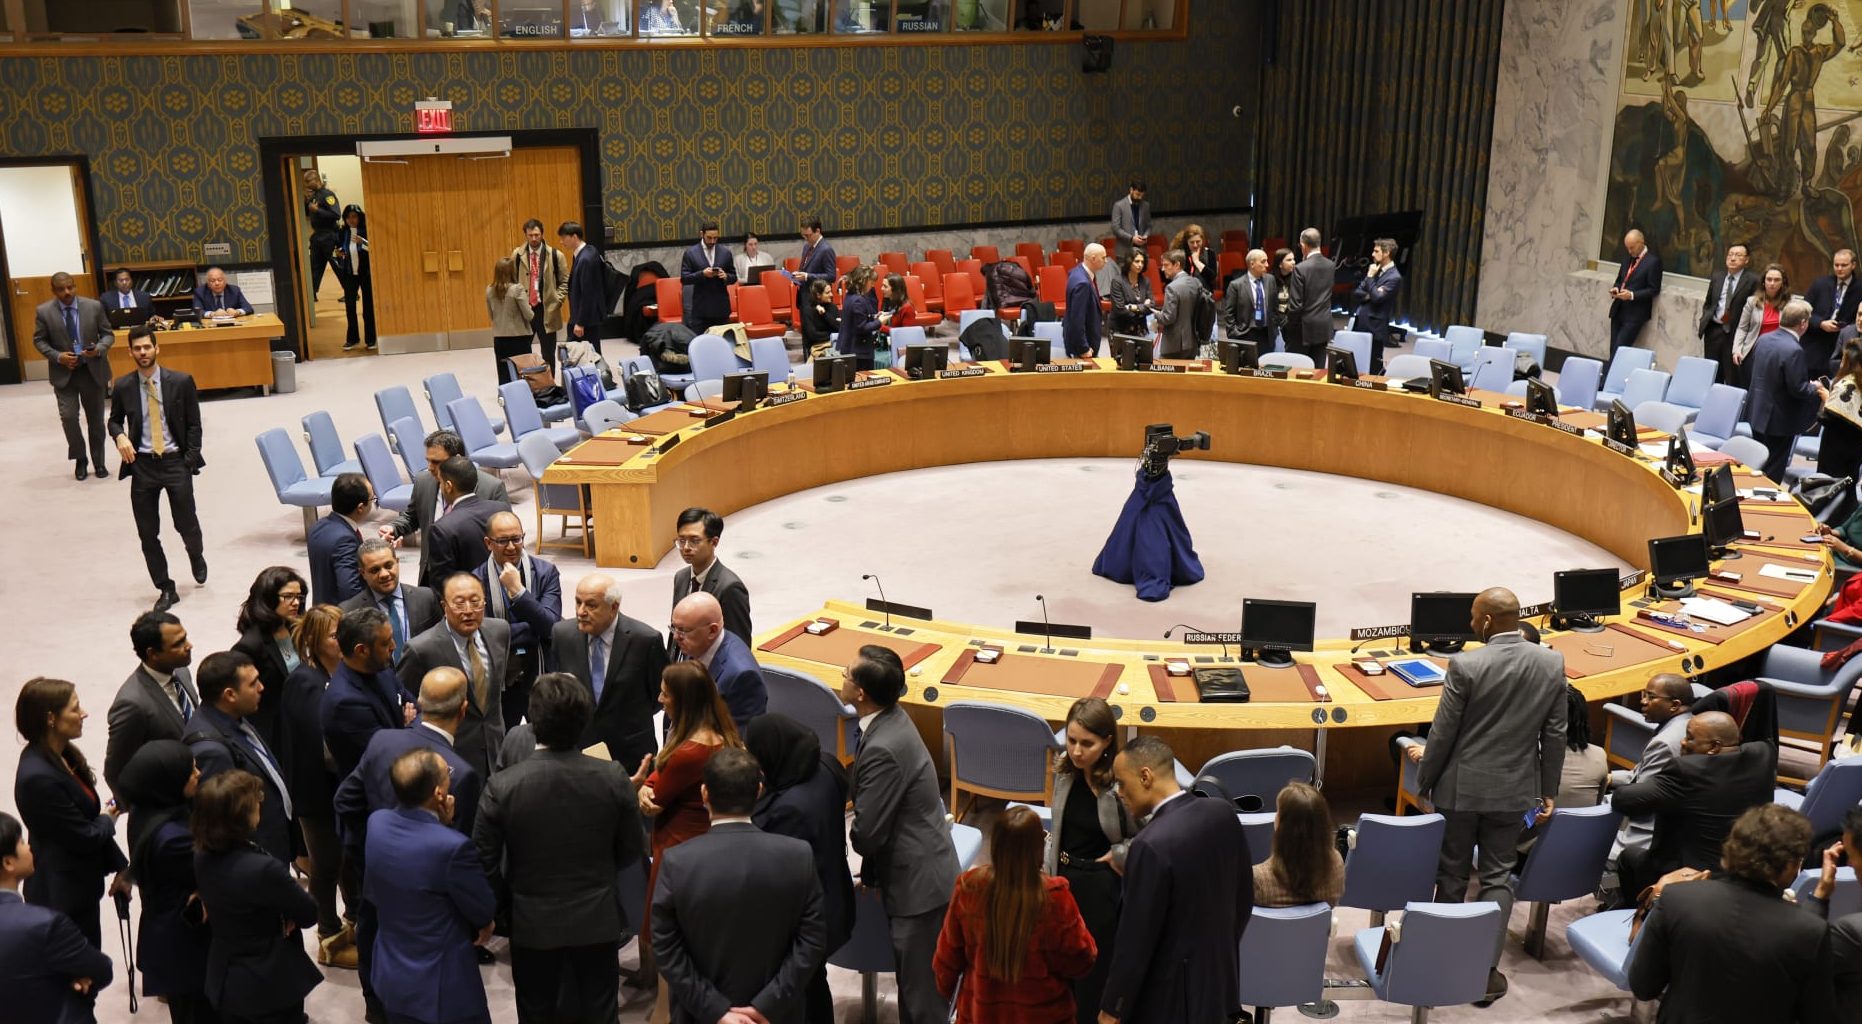 مجلس الأمن يؤجل التصويت بشأن غزة.. والاحتلال يكتشف "أنفاق مهمة"